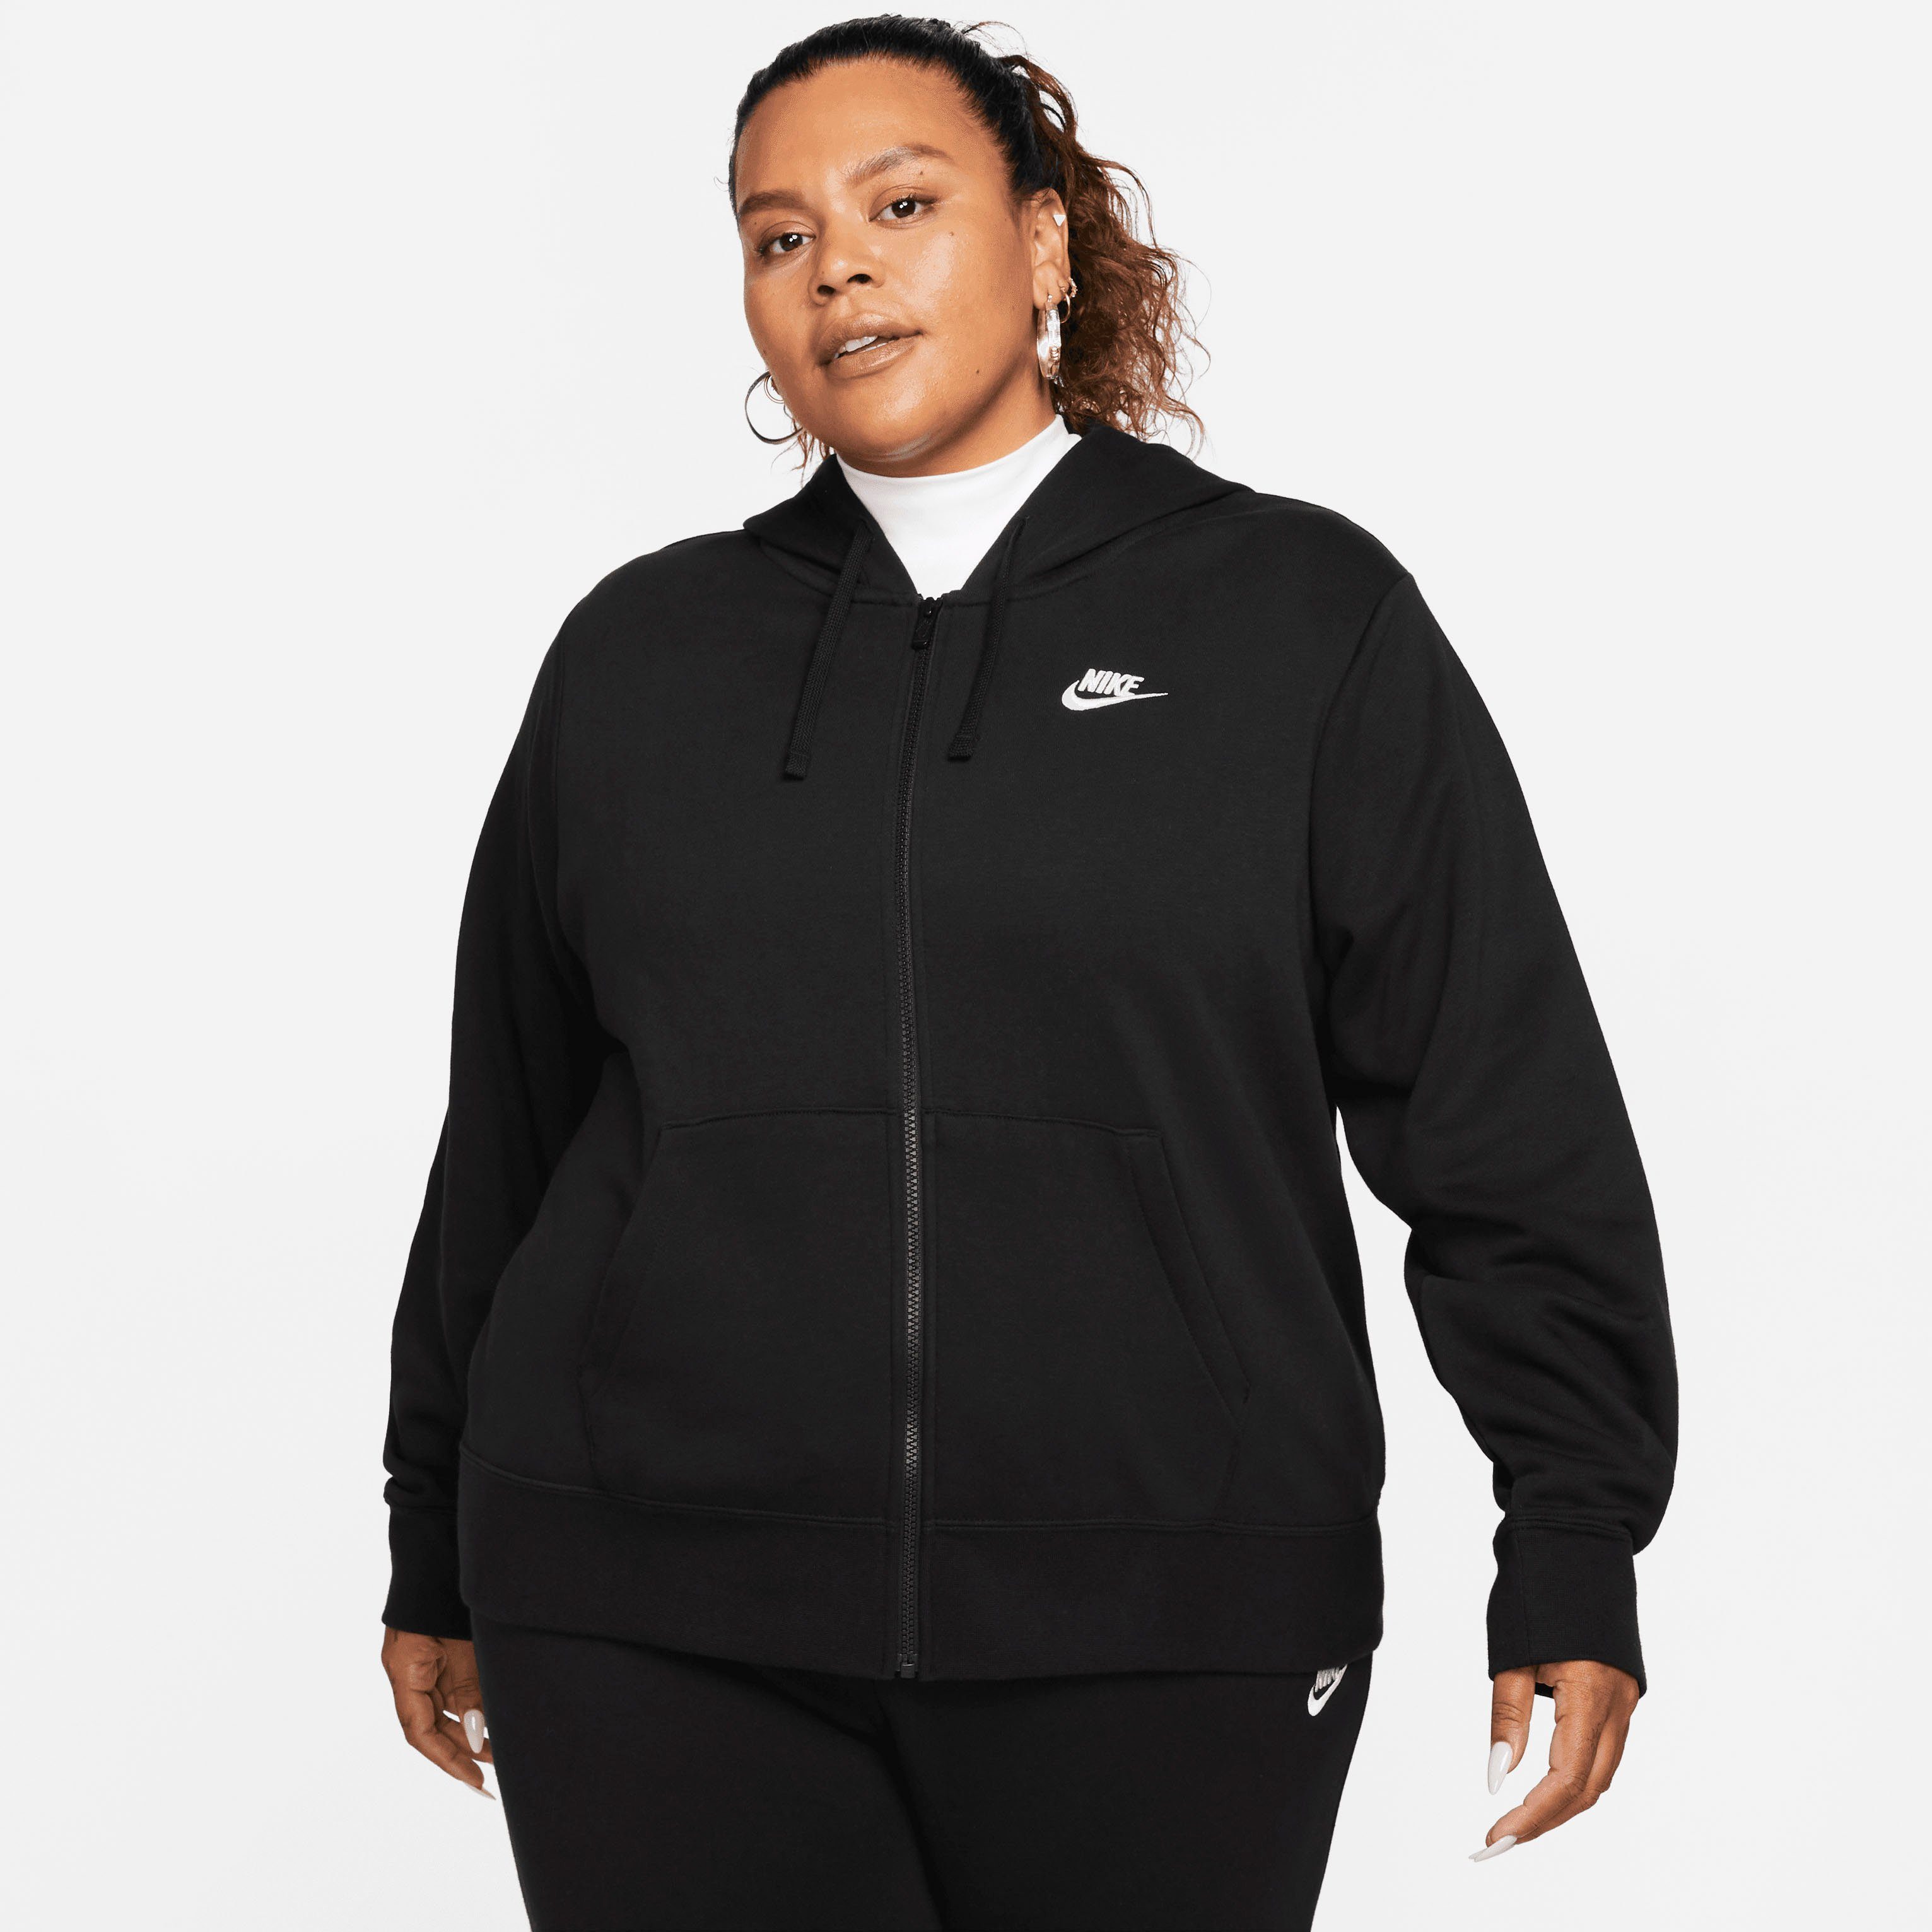 Nike Sweatjacken Damen online kaufen | OTTO